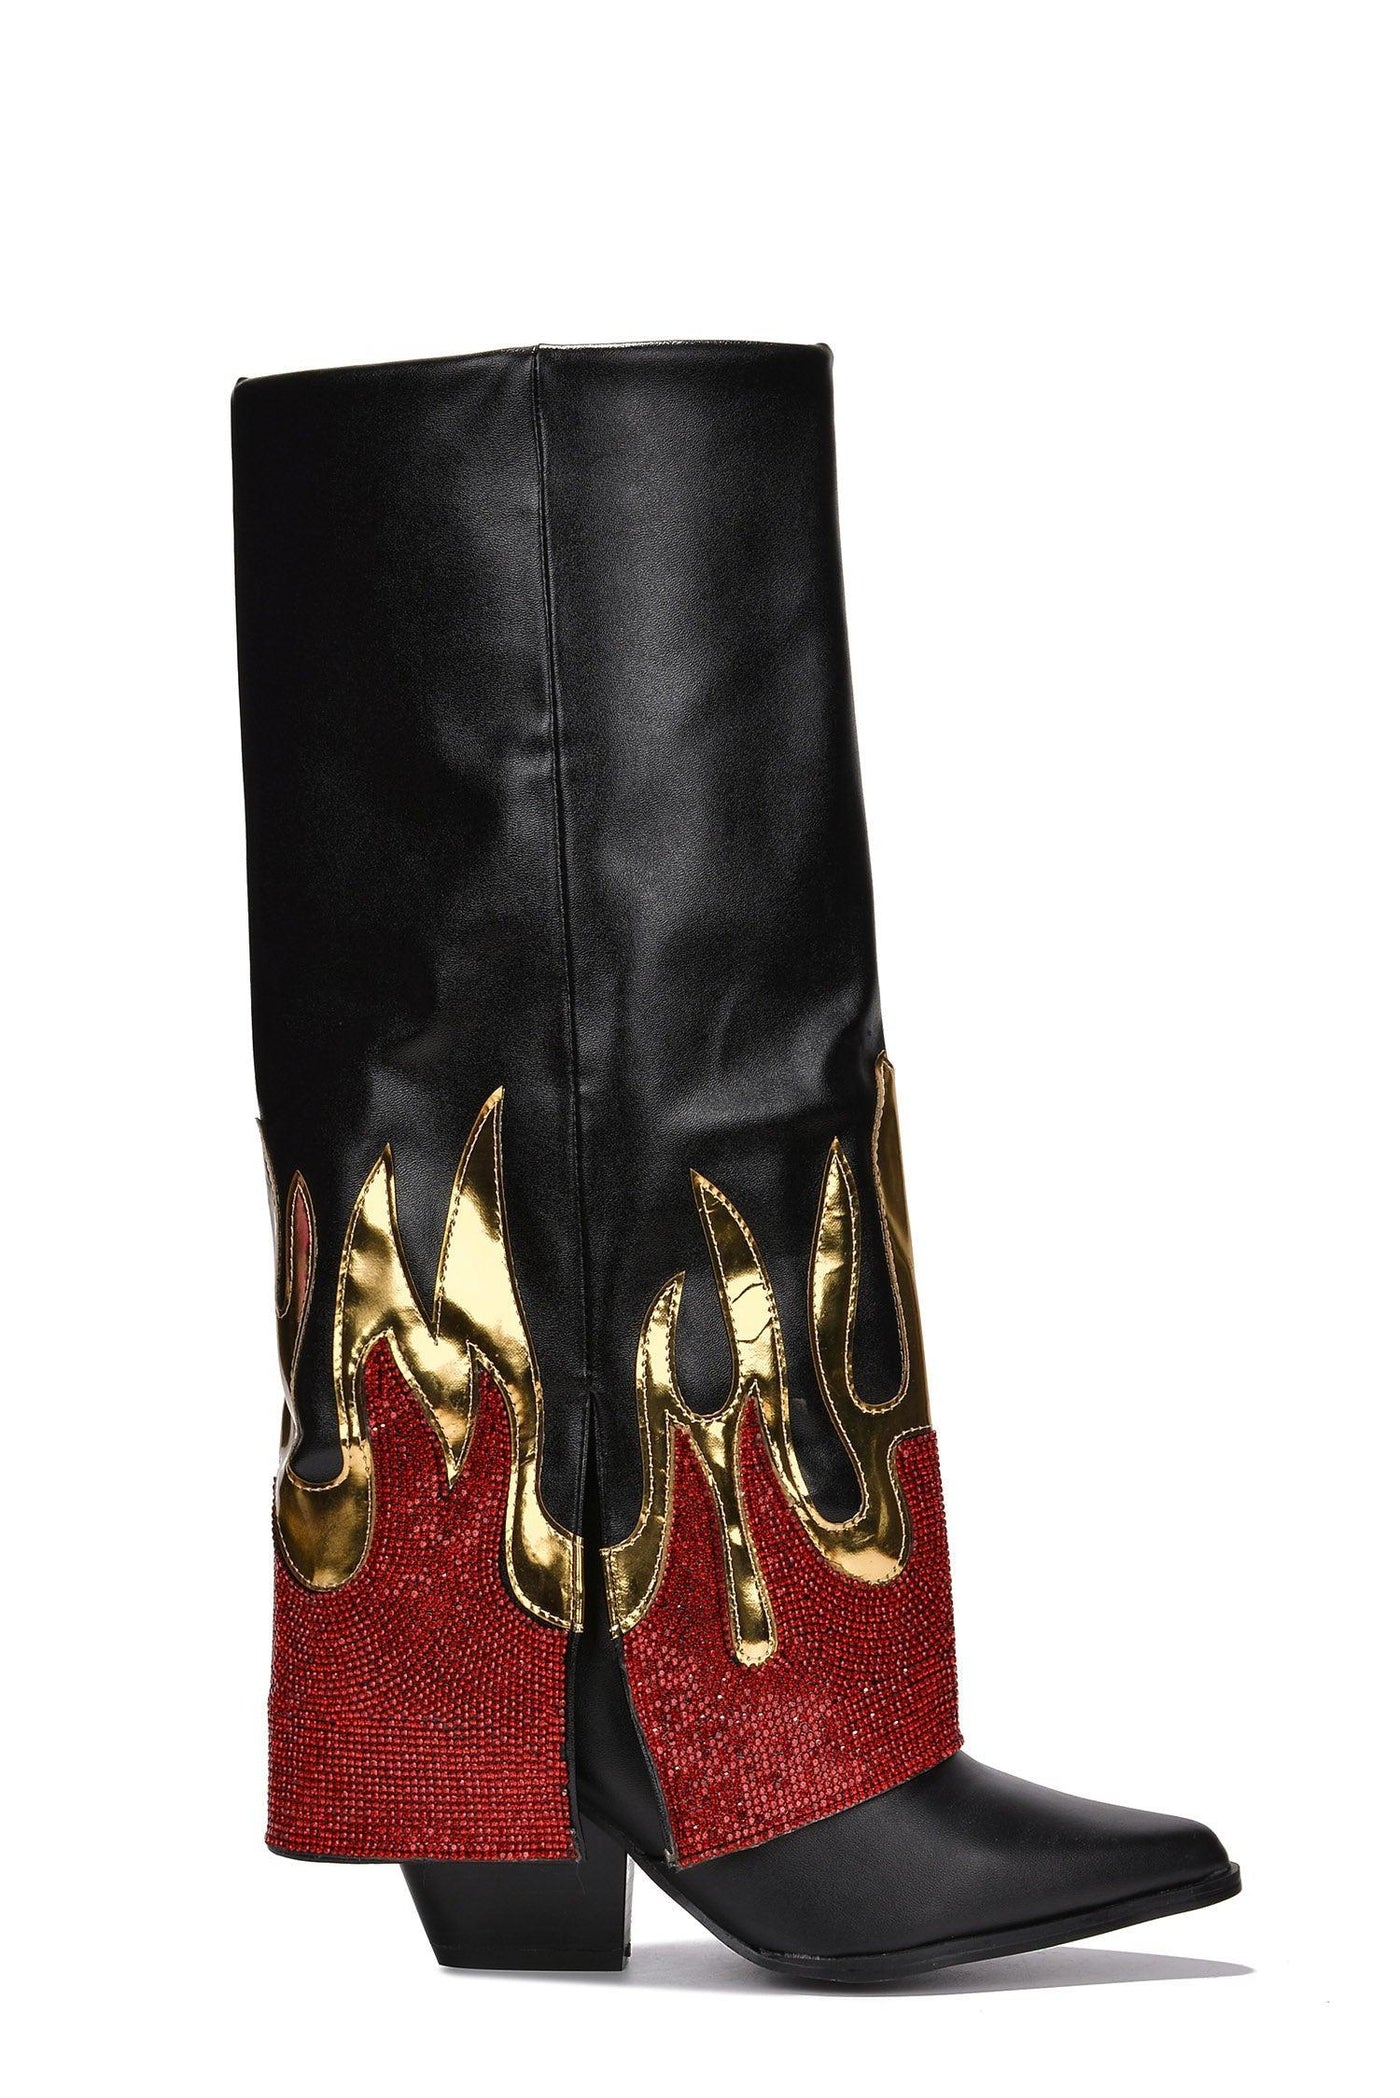 EMERSYN - BLACK Thigh High Boots - AMIClubwear